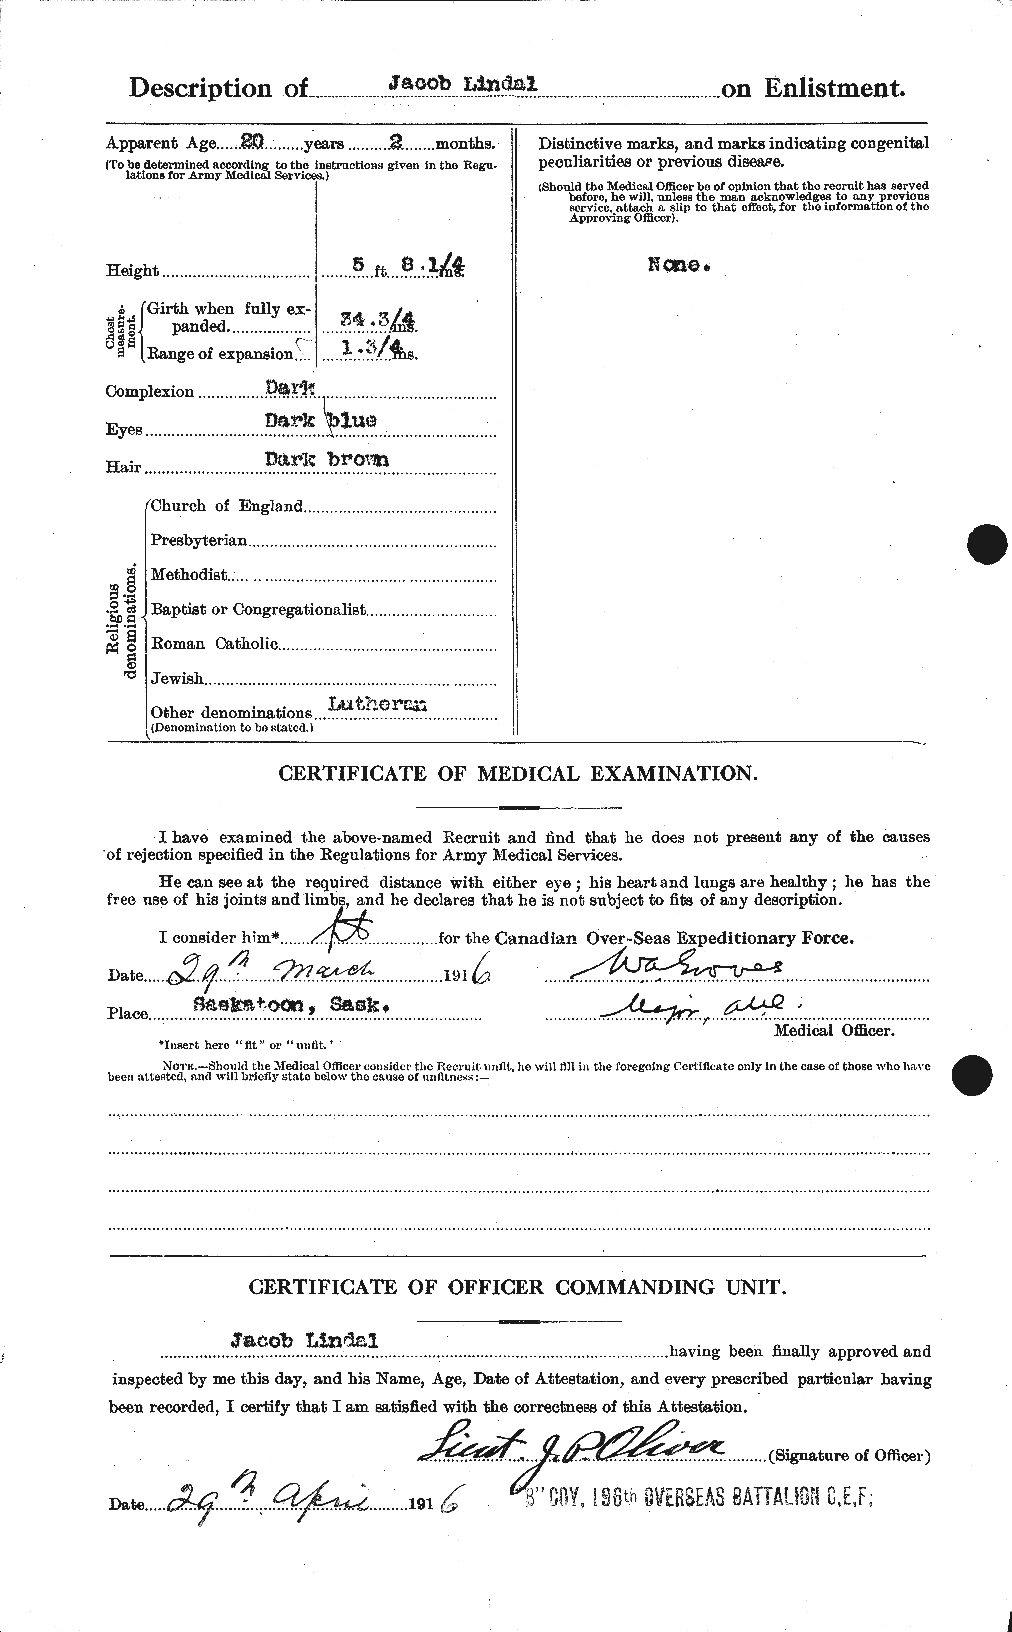 Dossiers du Personnel de la Première Guerre mondiale - CEC 467643b